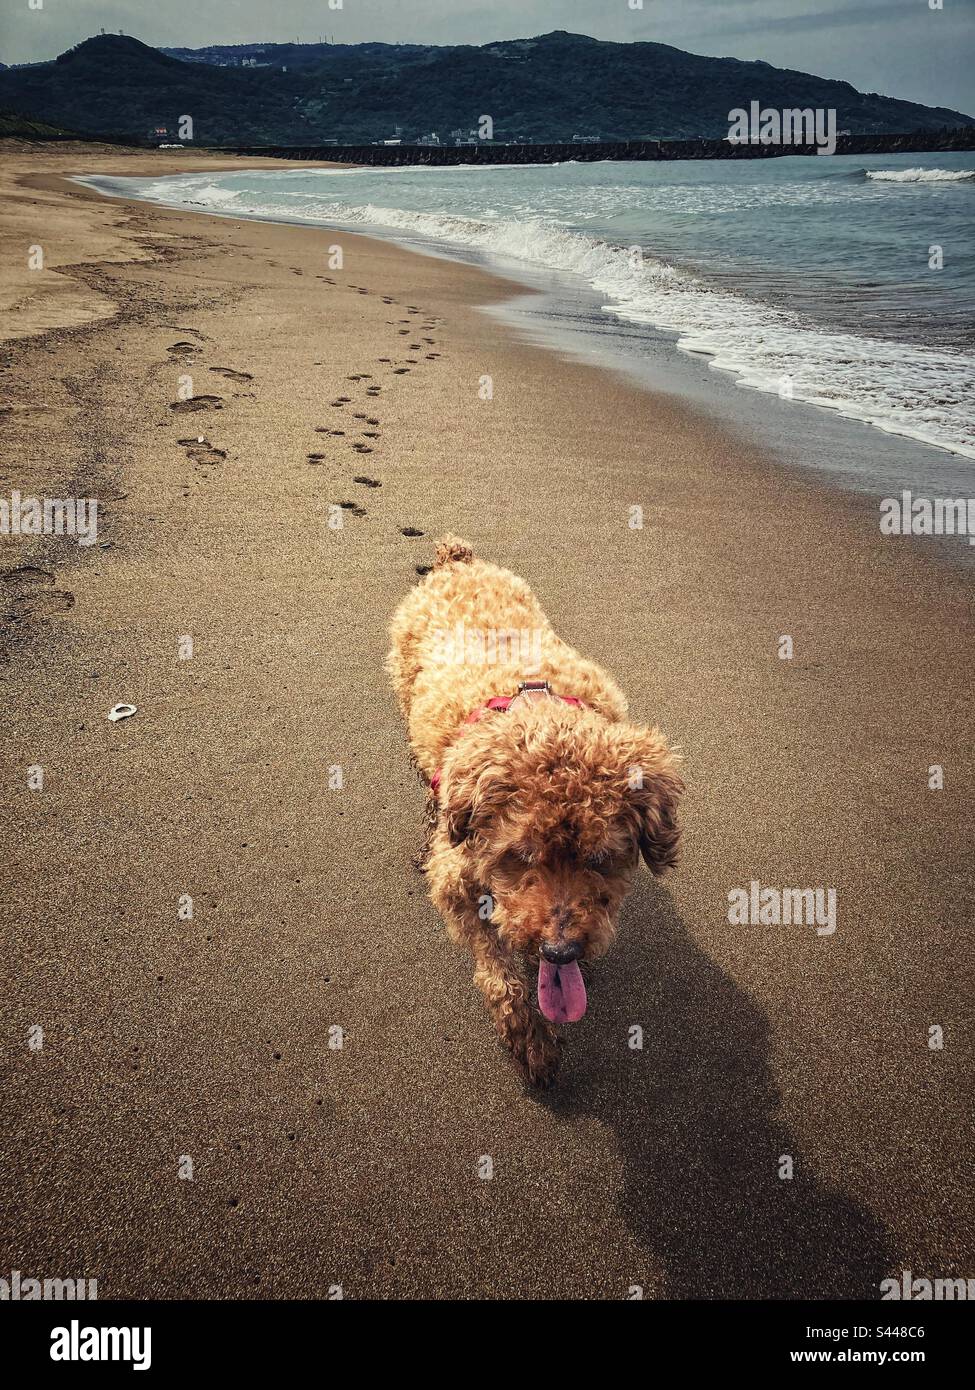 Schokoladenpudel läuft am Strand in Richtung der Kamera entlang und hinterlässt eine lange Linie von Pfotenabdrücken im Sand hinter ihm. Stockfoto